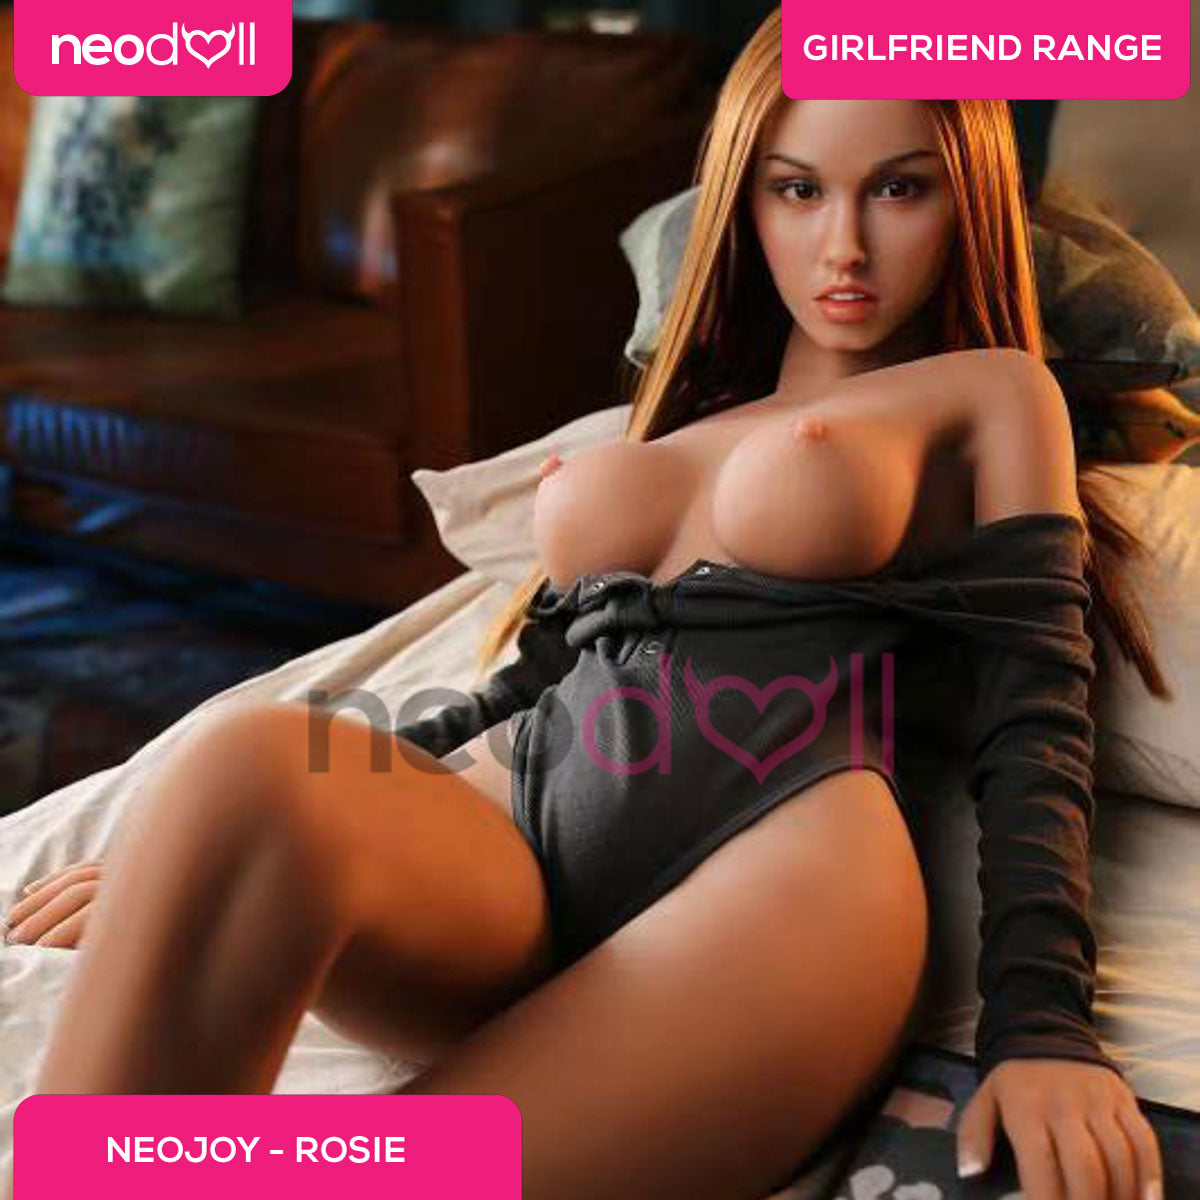 Neodoll Girlfriend Rosie - Silicone TPE Hybrid Sex Doll - 172cm - Tan